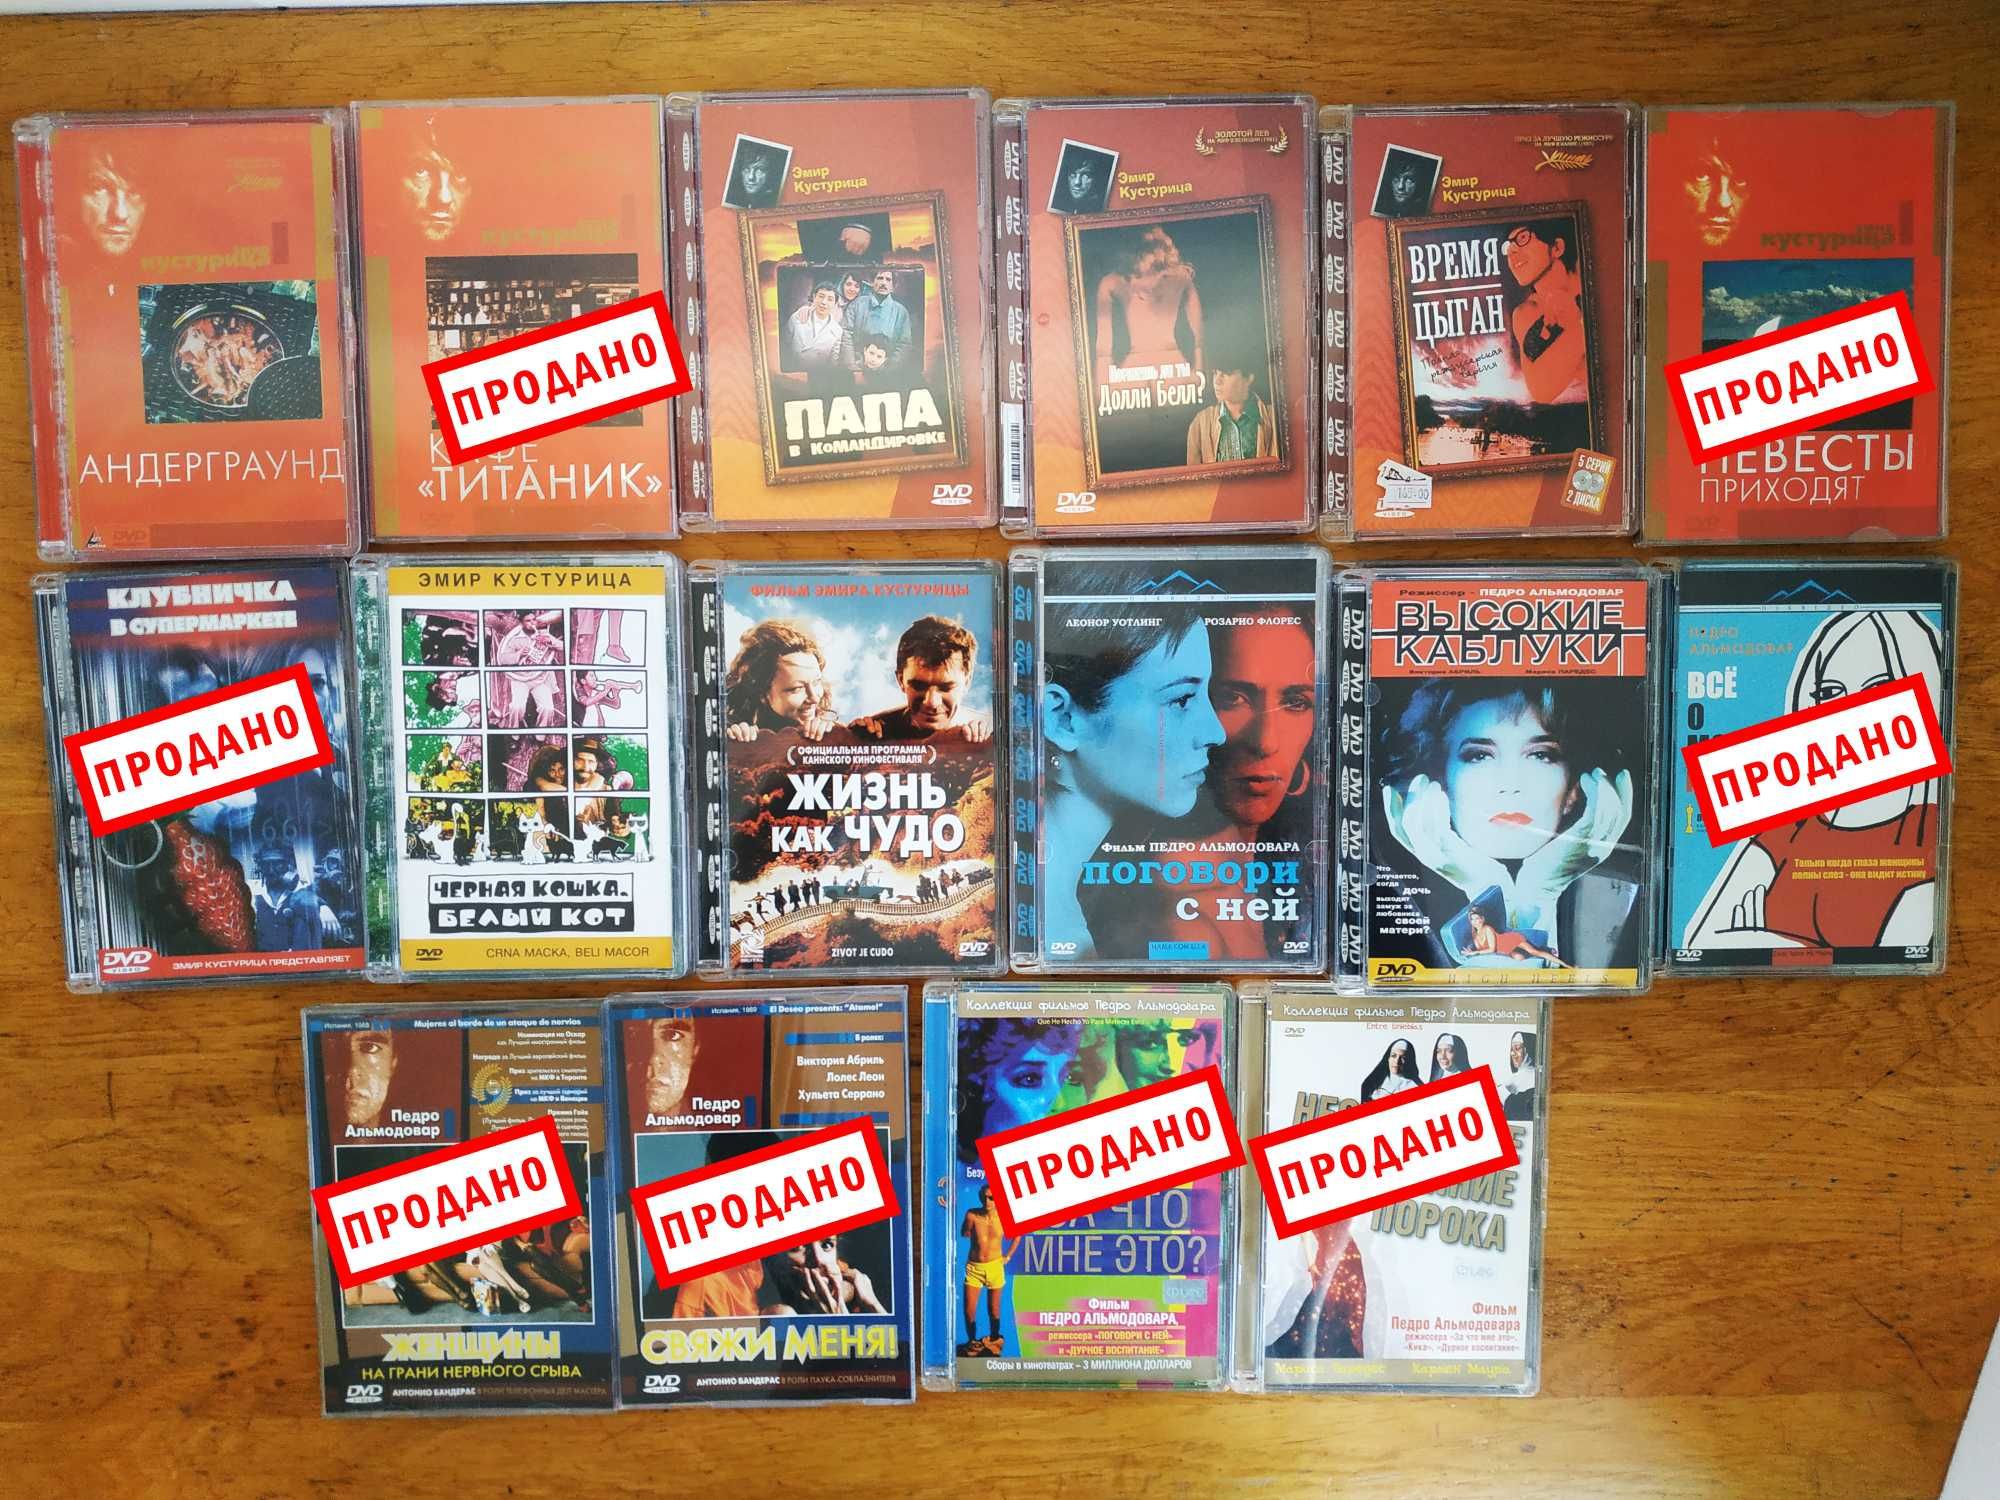 Двд dvd диски фильмы коллекционное издание лицензия стекло